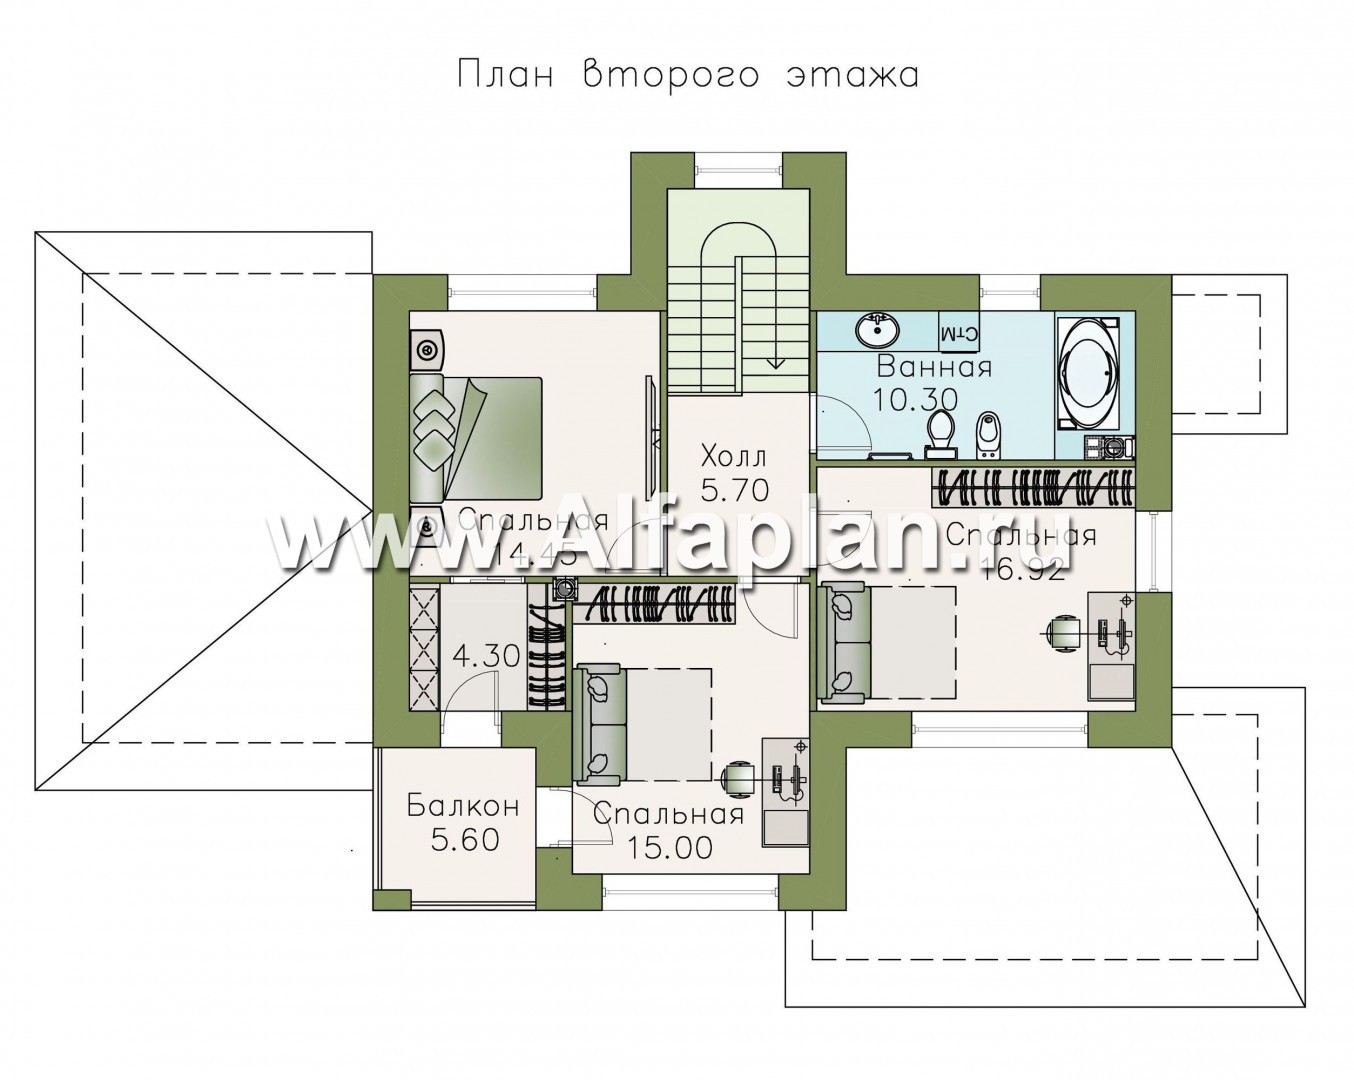 Изображение плана проекта «Саар»- проект двухэтажного дома, с террасой, с гостевой на 1 этаже, в стиле Райта, с сауной в пристройке №2